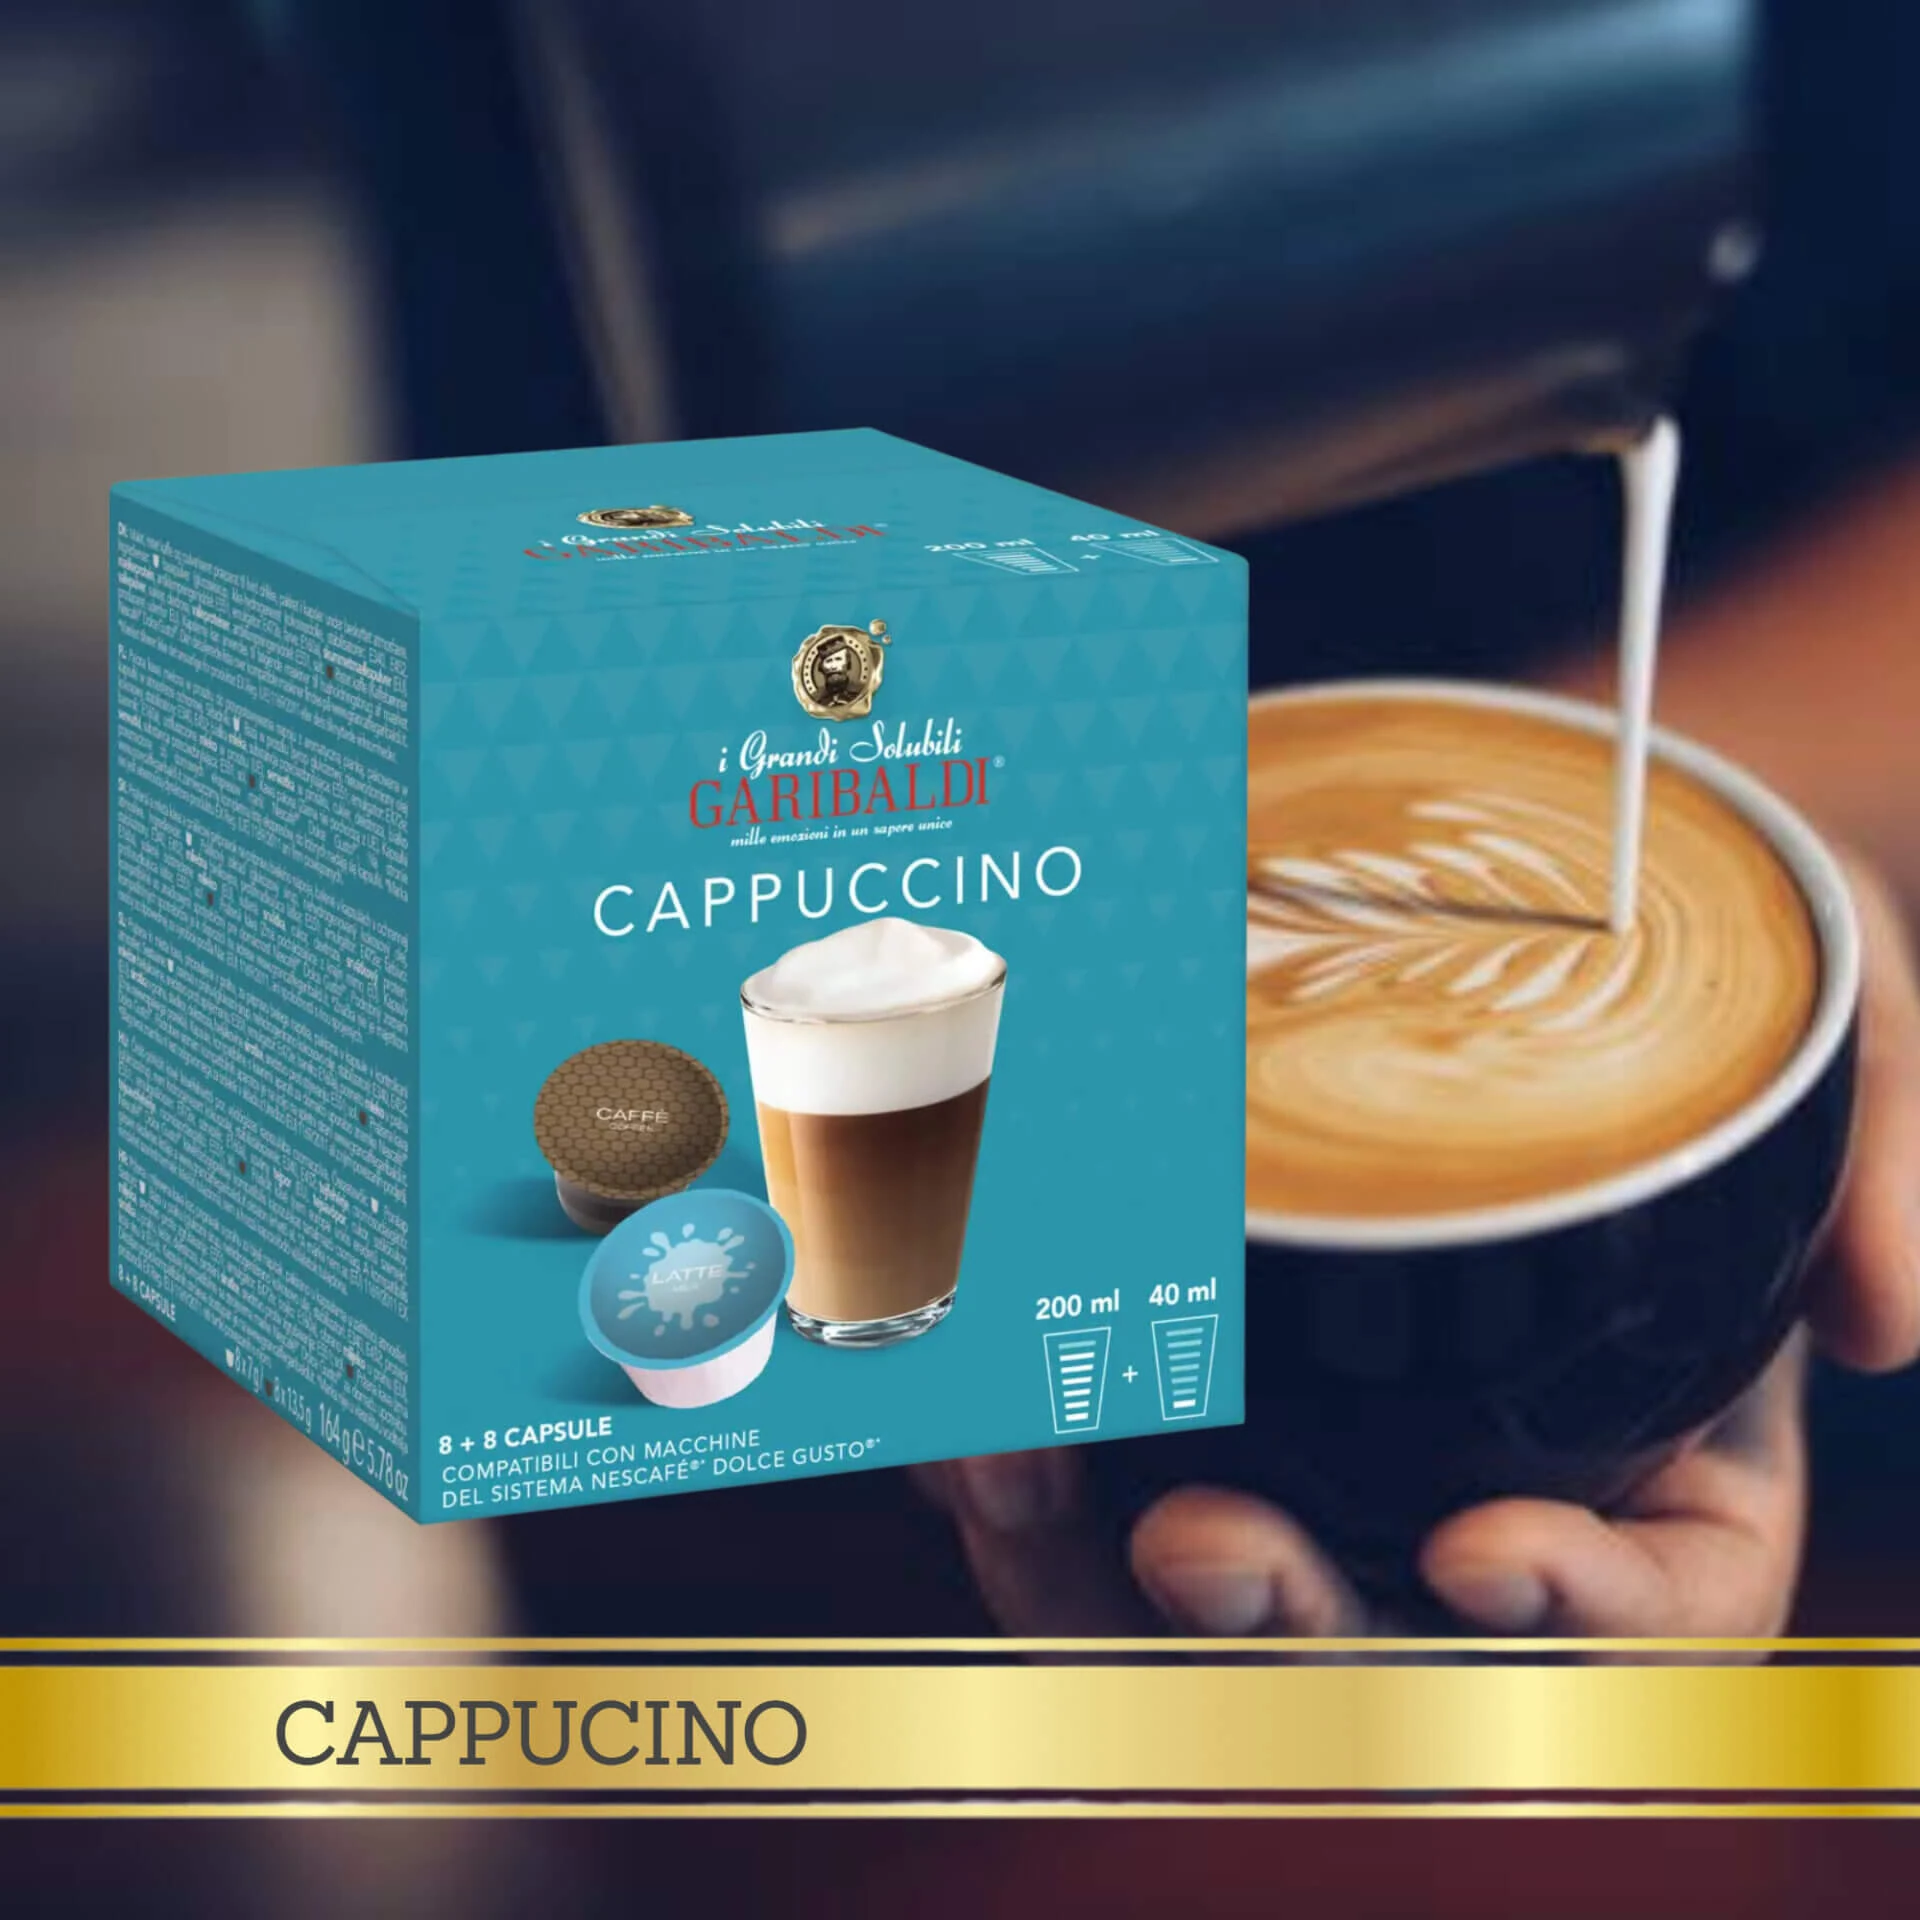 Cappuccino by Nescafé® Dolce Gusto®